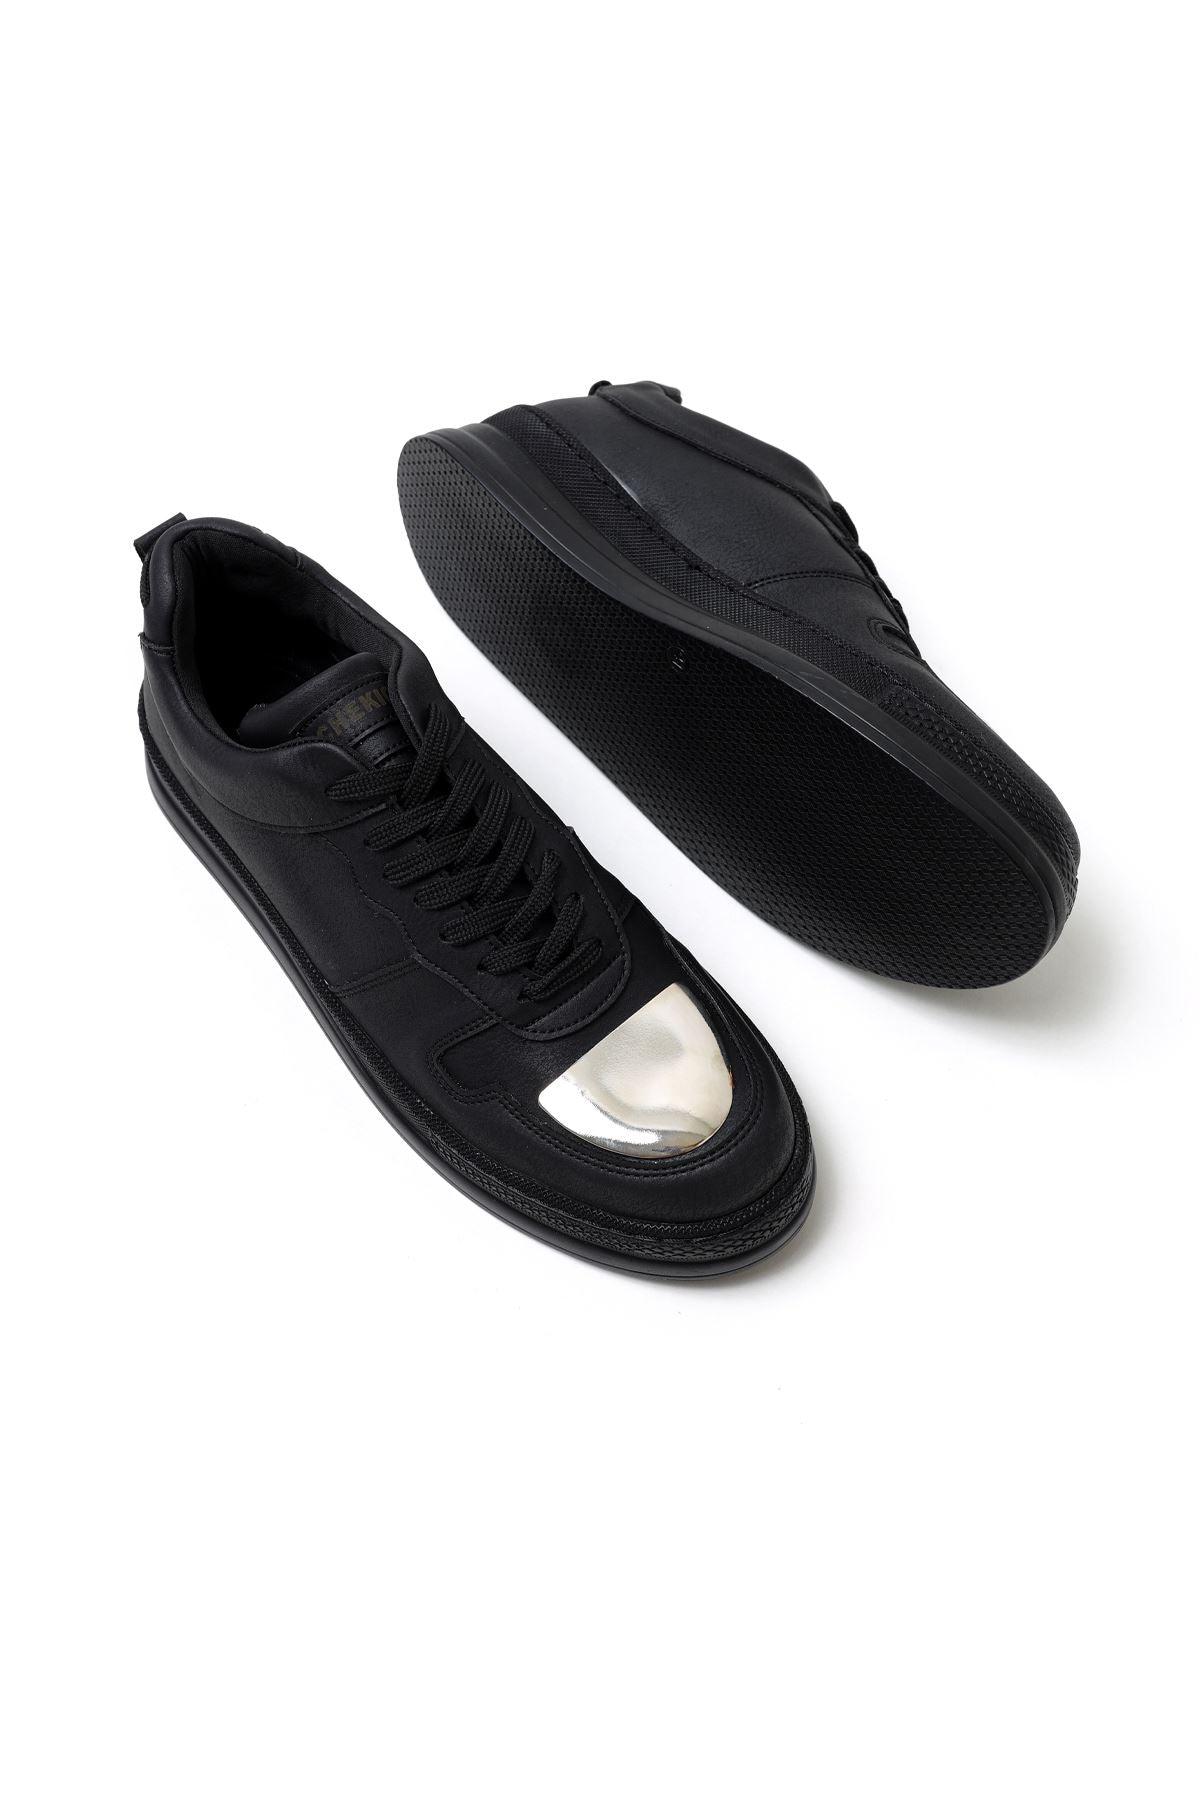 CH185 ST Men's Shoes BLACK - STREET MODE ™